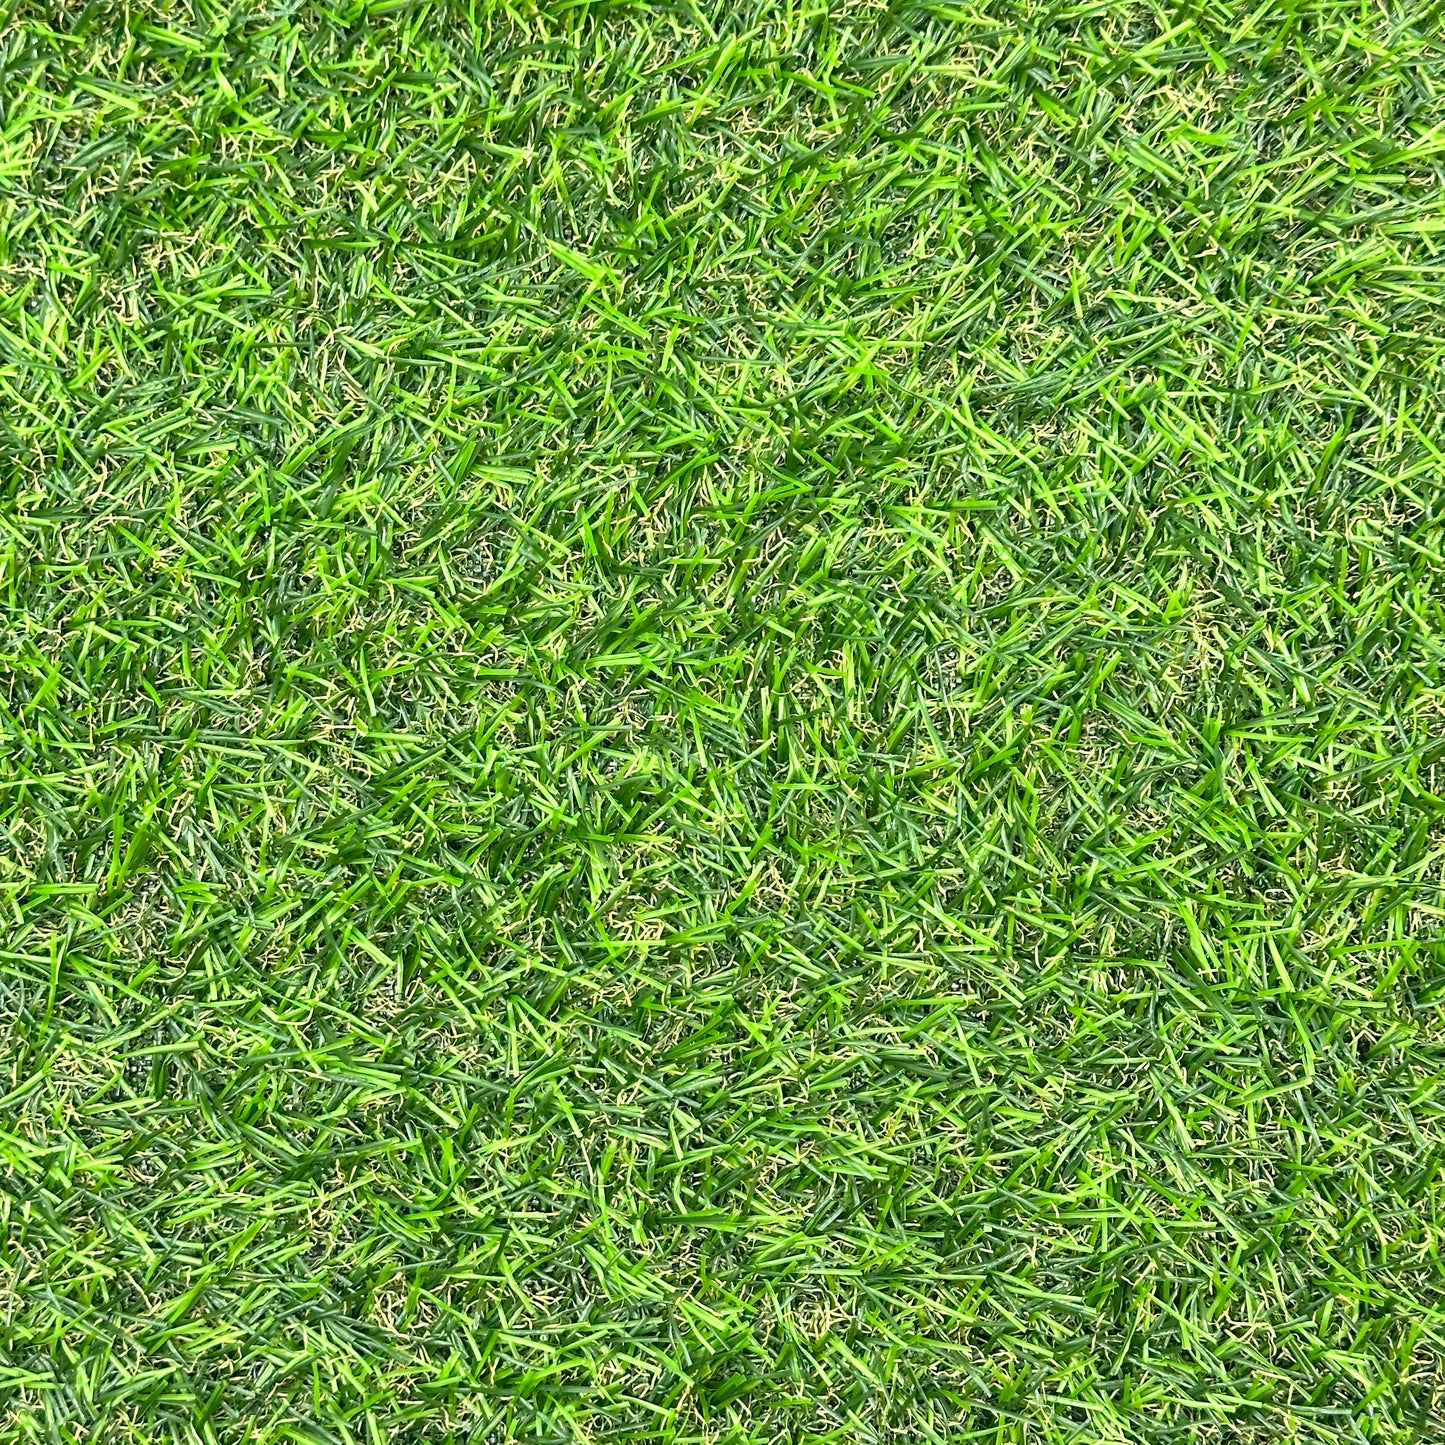 Nicoman Artificial Grass Door Mat